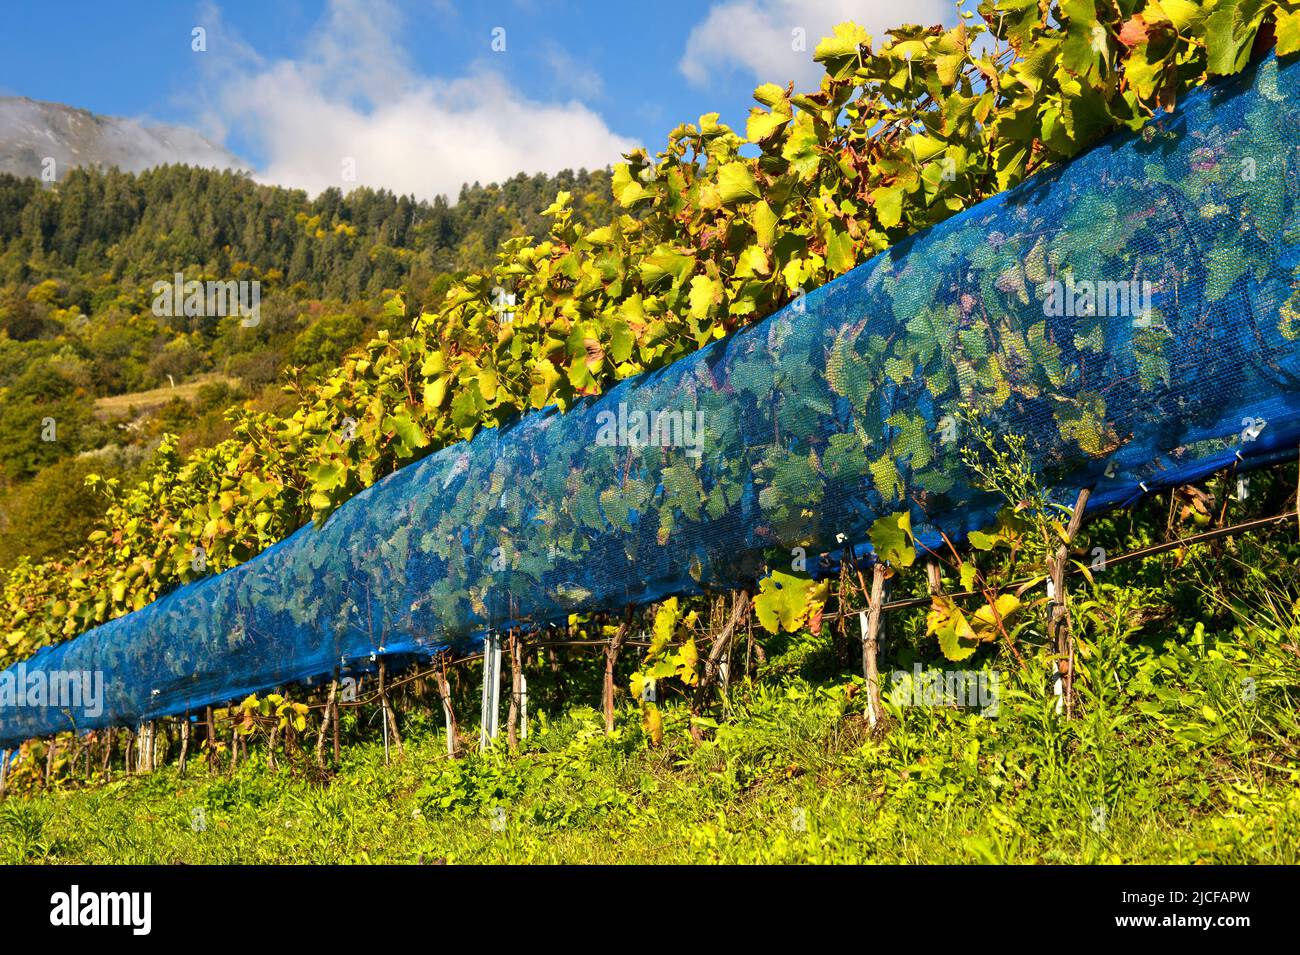 Les filets bleus de protection des oiseaux protègent contre l'alimentation des oiseaux dans un vignoble de la région viticole de Leytron, Valais, Suisse Banque D'Images